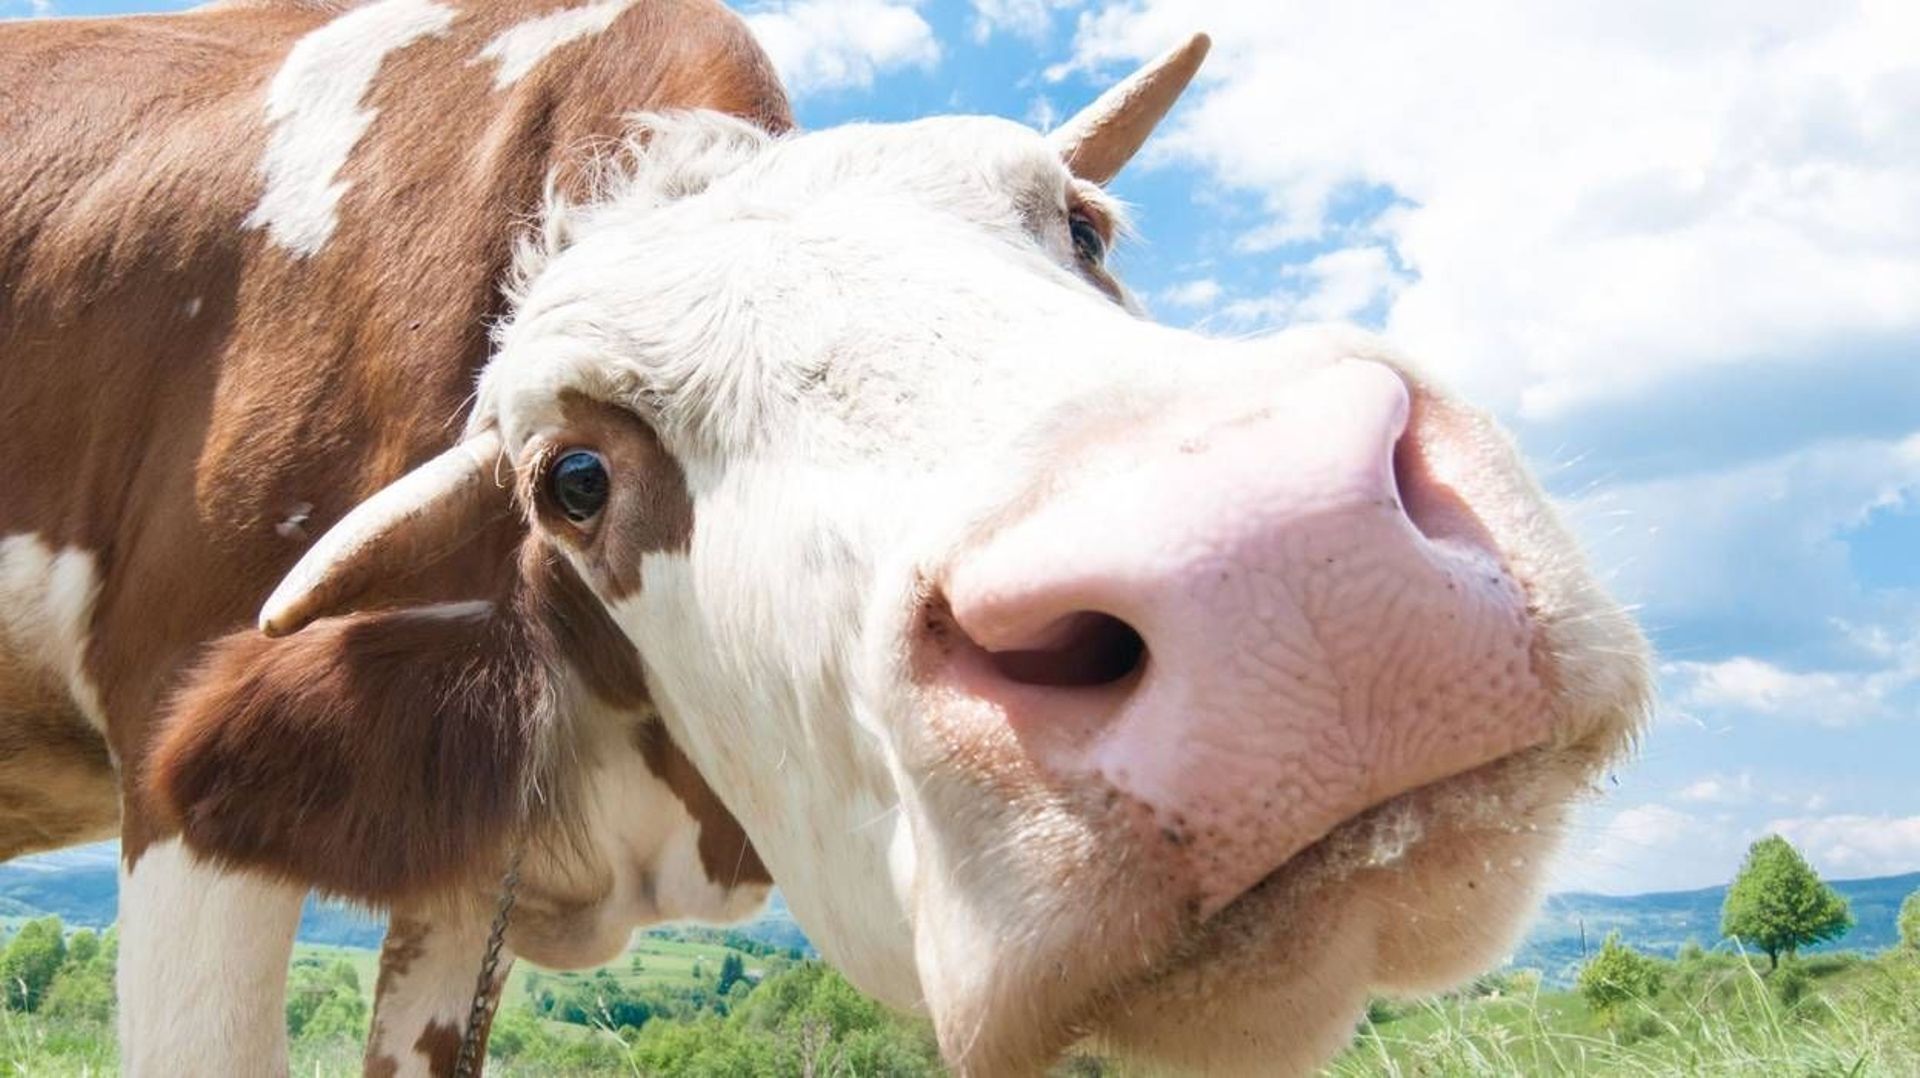 Climat: roter moins pour polluer moins, la recette des vaches heureuses 